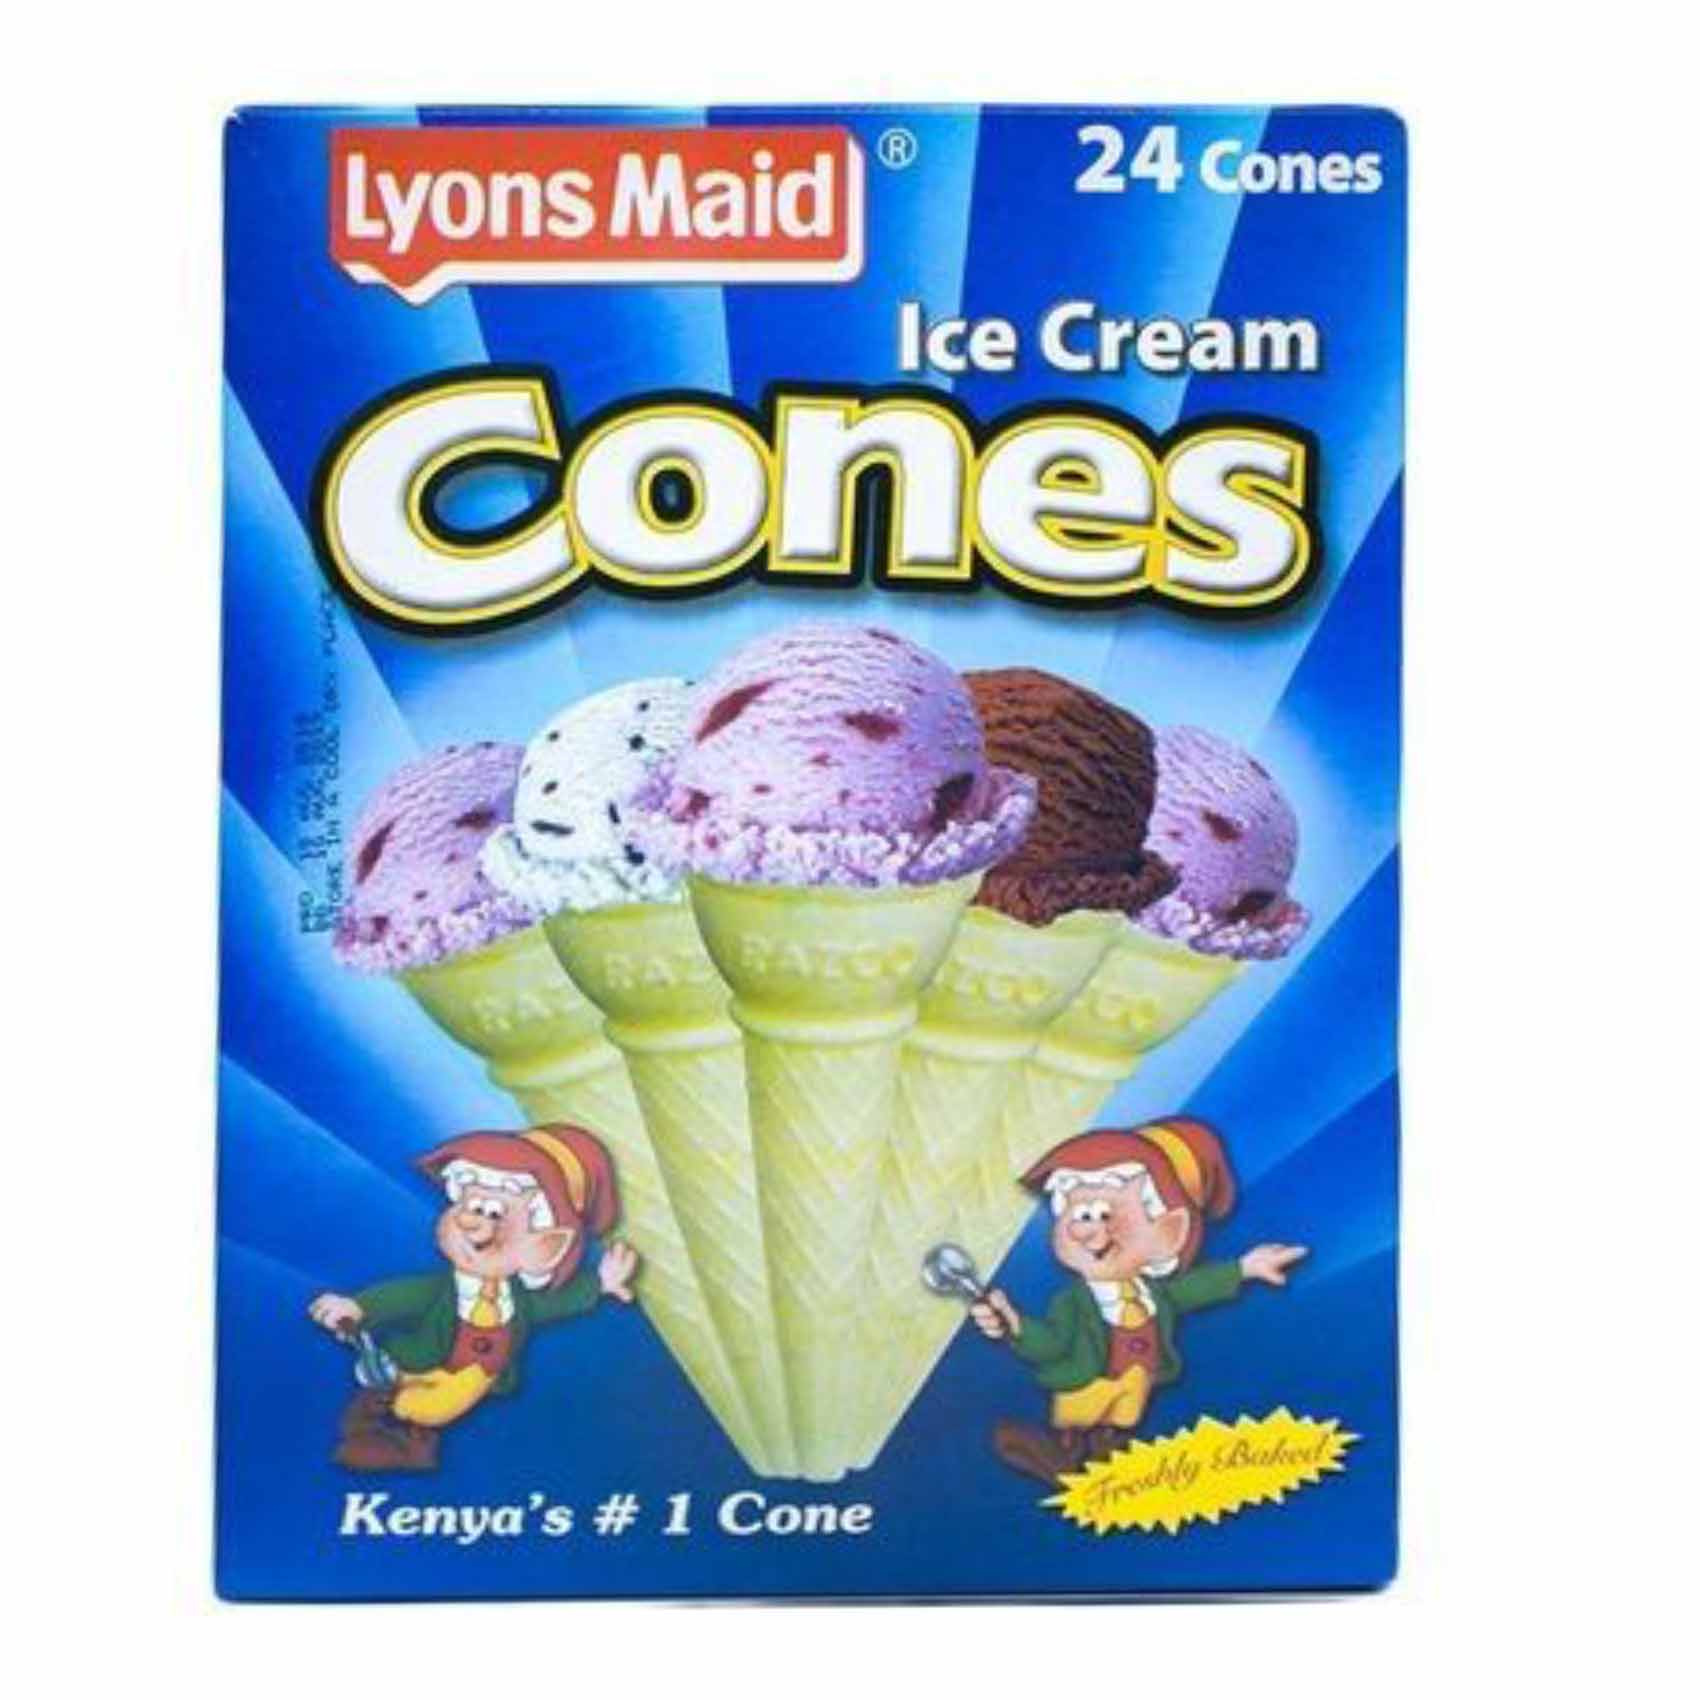 Lyons Maid Cones Ice Cream 120g